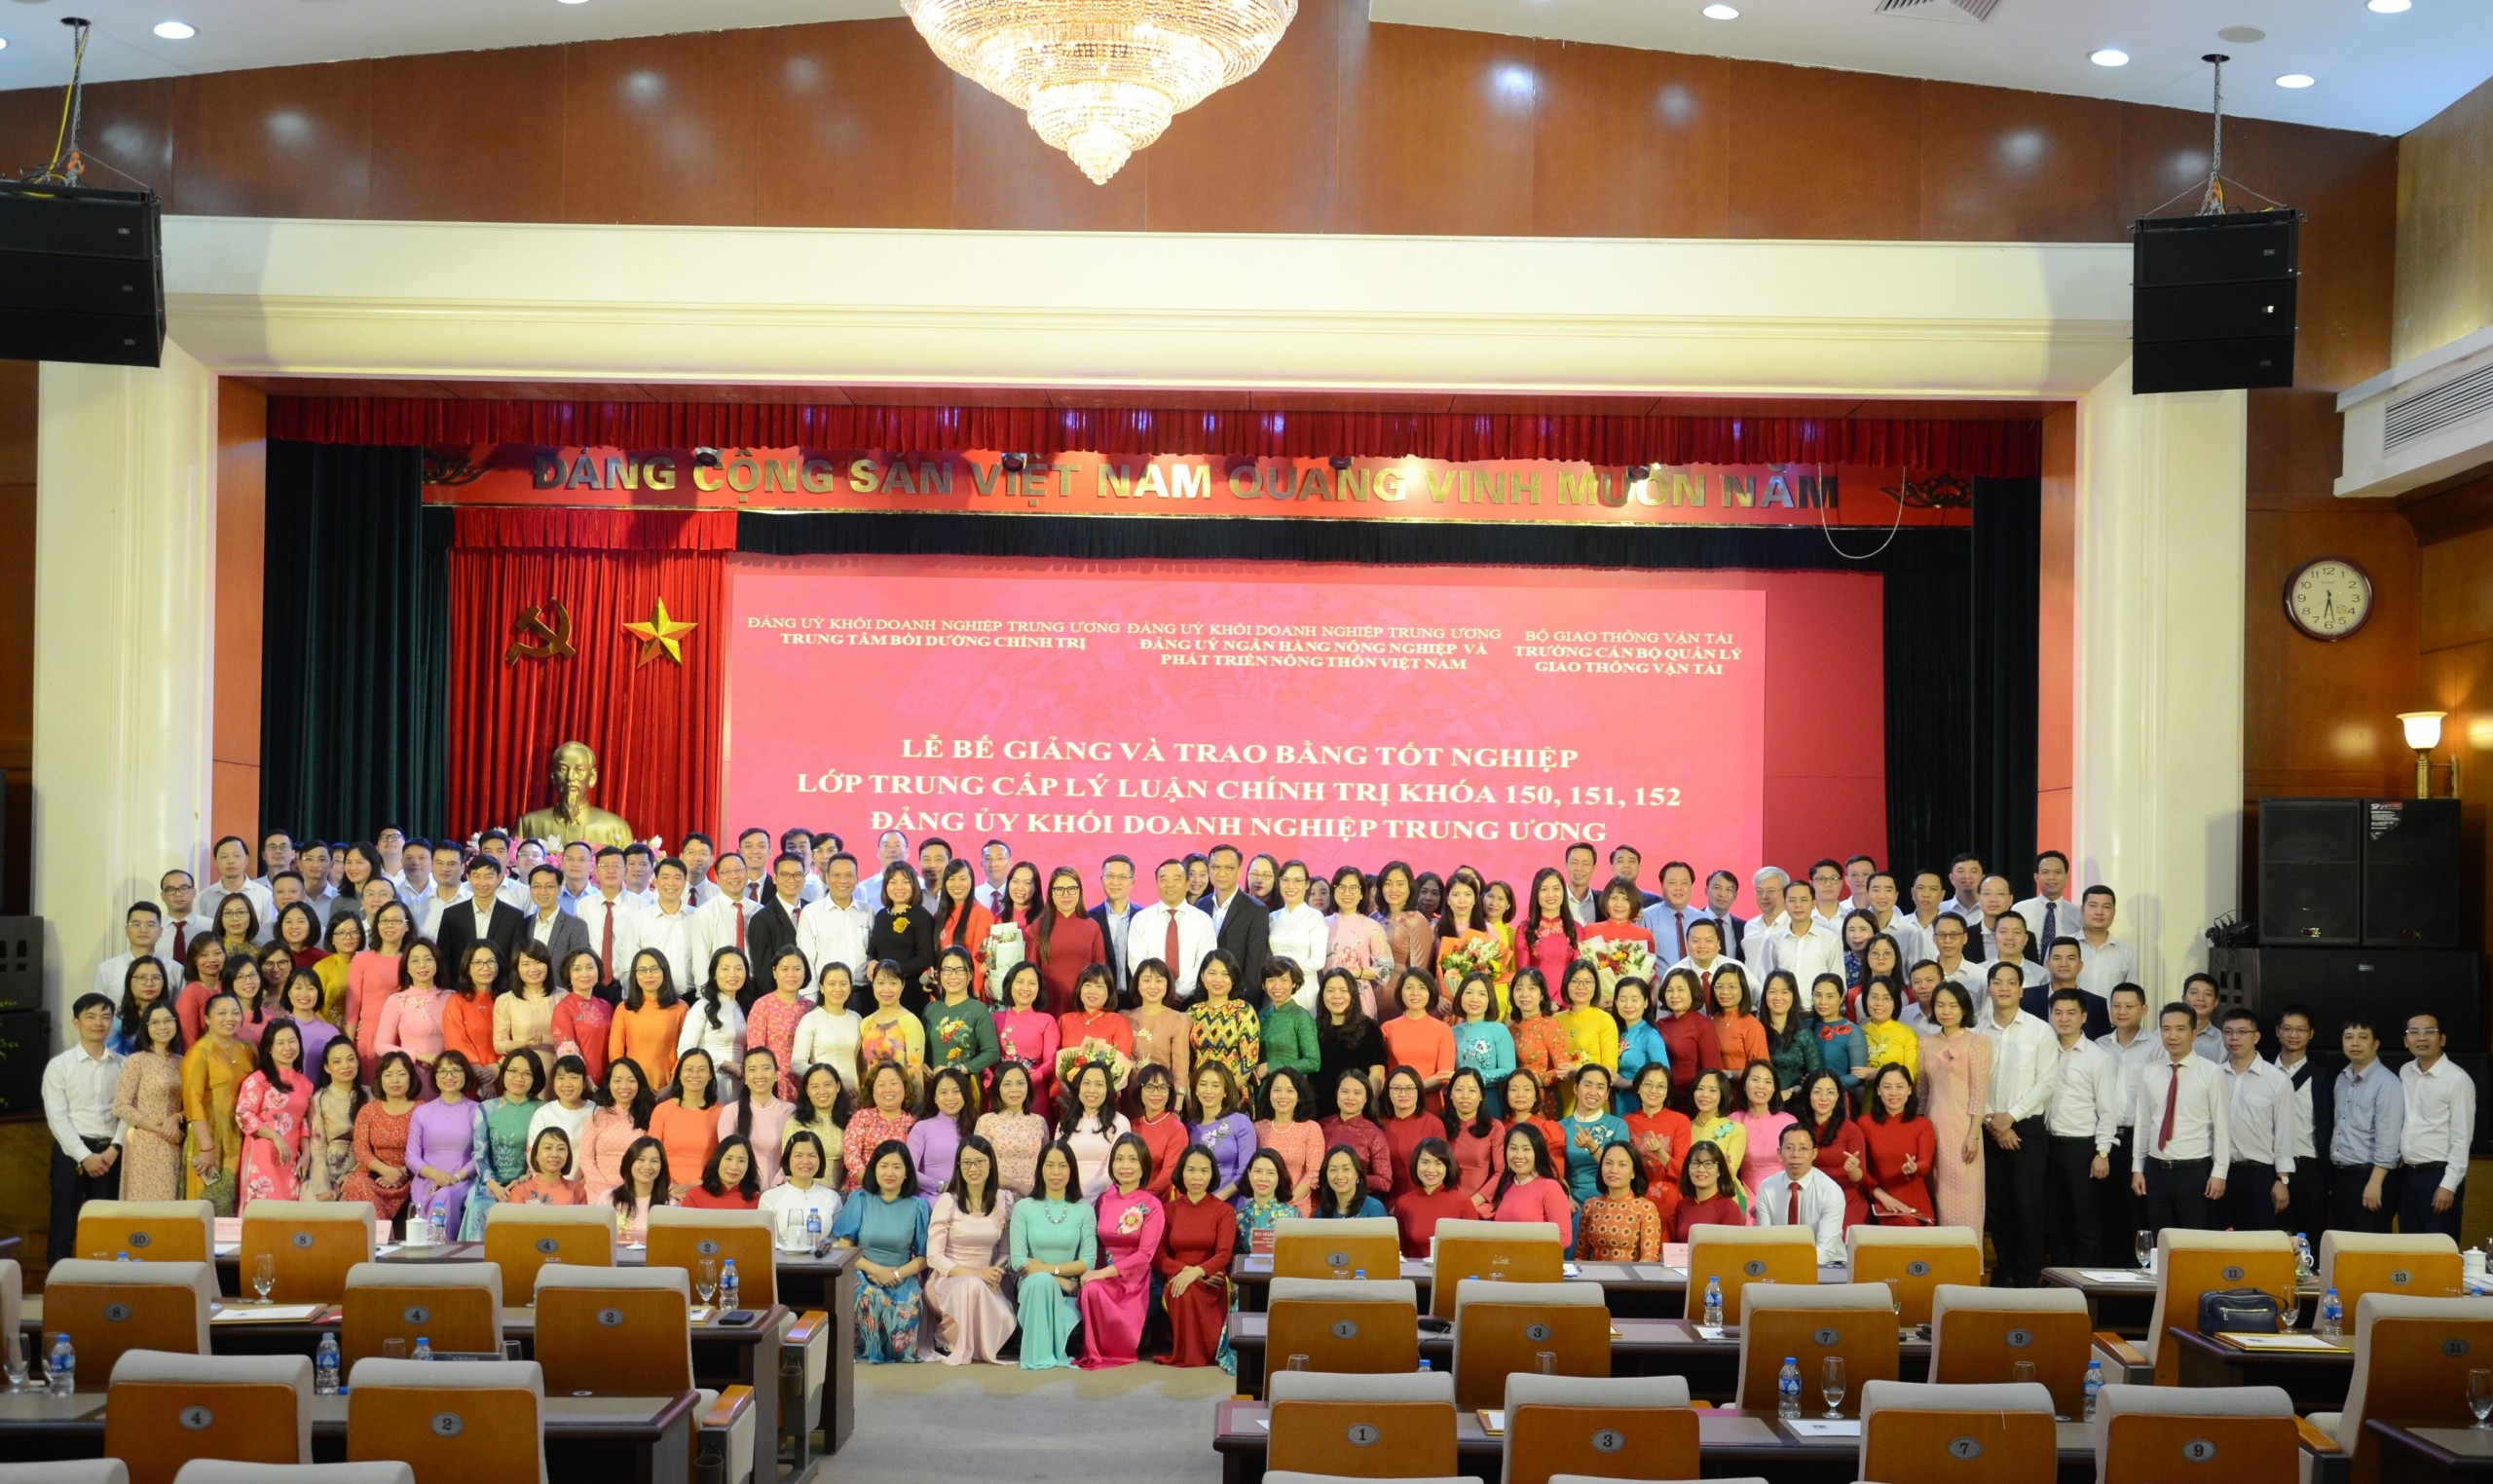 Bế giảng các lớp Trung cấp lý luận chính trị Đảng ủy Khối Doanh nghiệp Trung ương tại Ngân hàng Nông nghiệp và Phát triển nông thôn Việt Nam